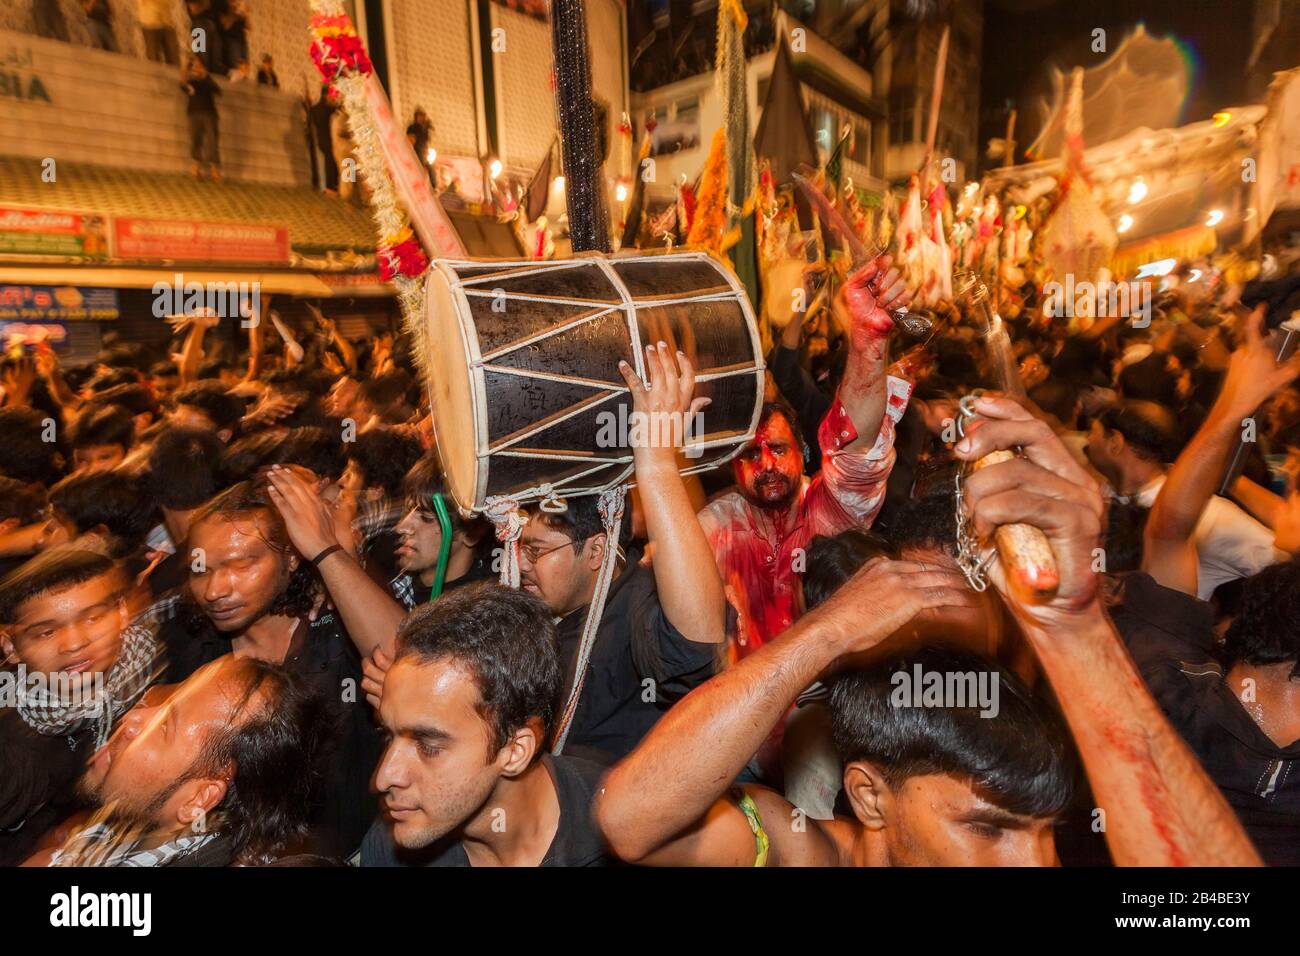 Indien, Bundesstaat Maharashtra, Bombay (Mumbai), jährliche Ashura-Prozession, Beginn des muslimischen Monats Muharram, Feier zur Ehrung des Martyriums des schiitischen Propheten Husayn, blutende Teilnehmer, die einen Dolch und eine Menschenmenge paradieren Stockfoto